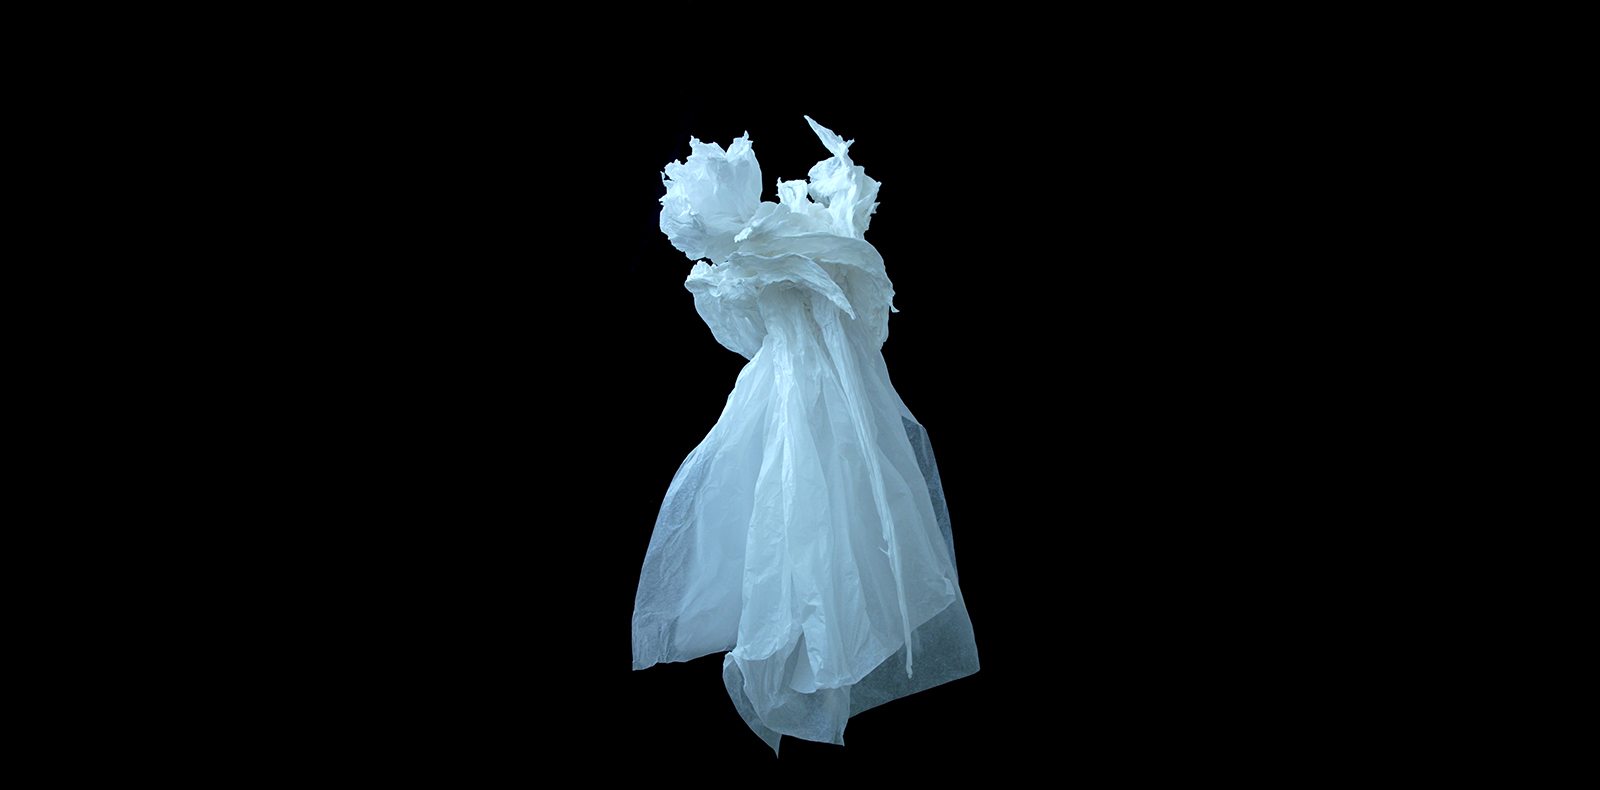 Claudine Drai, “Sans titre”, 2018 Sculpture Papier de soie 120 x 70 x 70 cm © Adagp, Paris 2018-2019